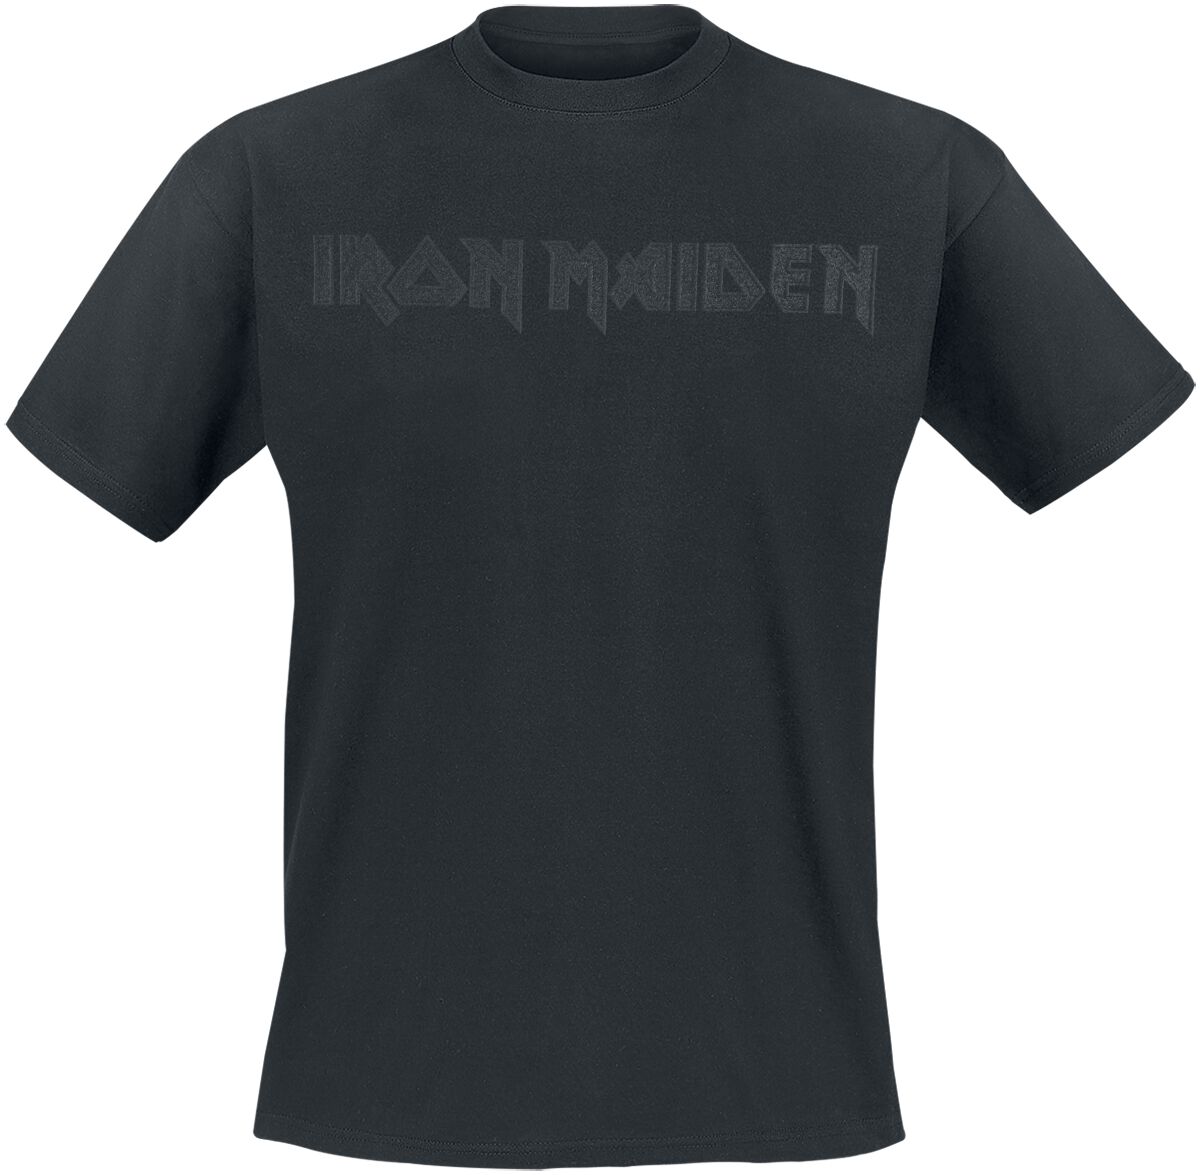 Iron Maiden T-Shirt - Black On Black Logo - S bis 4XL - für Männer - Größe XL - schwarz  - Lizenziertes Merchandise!